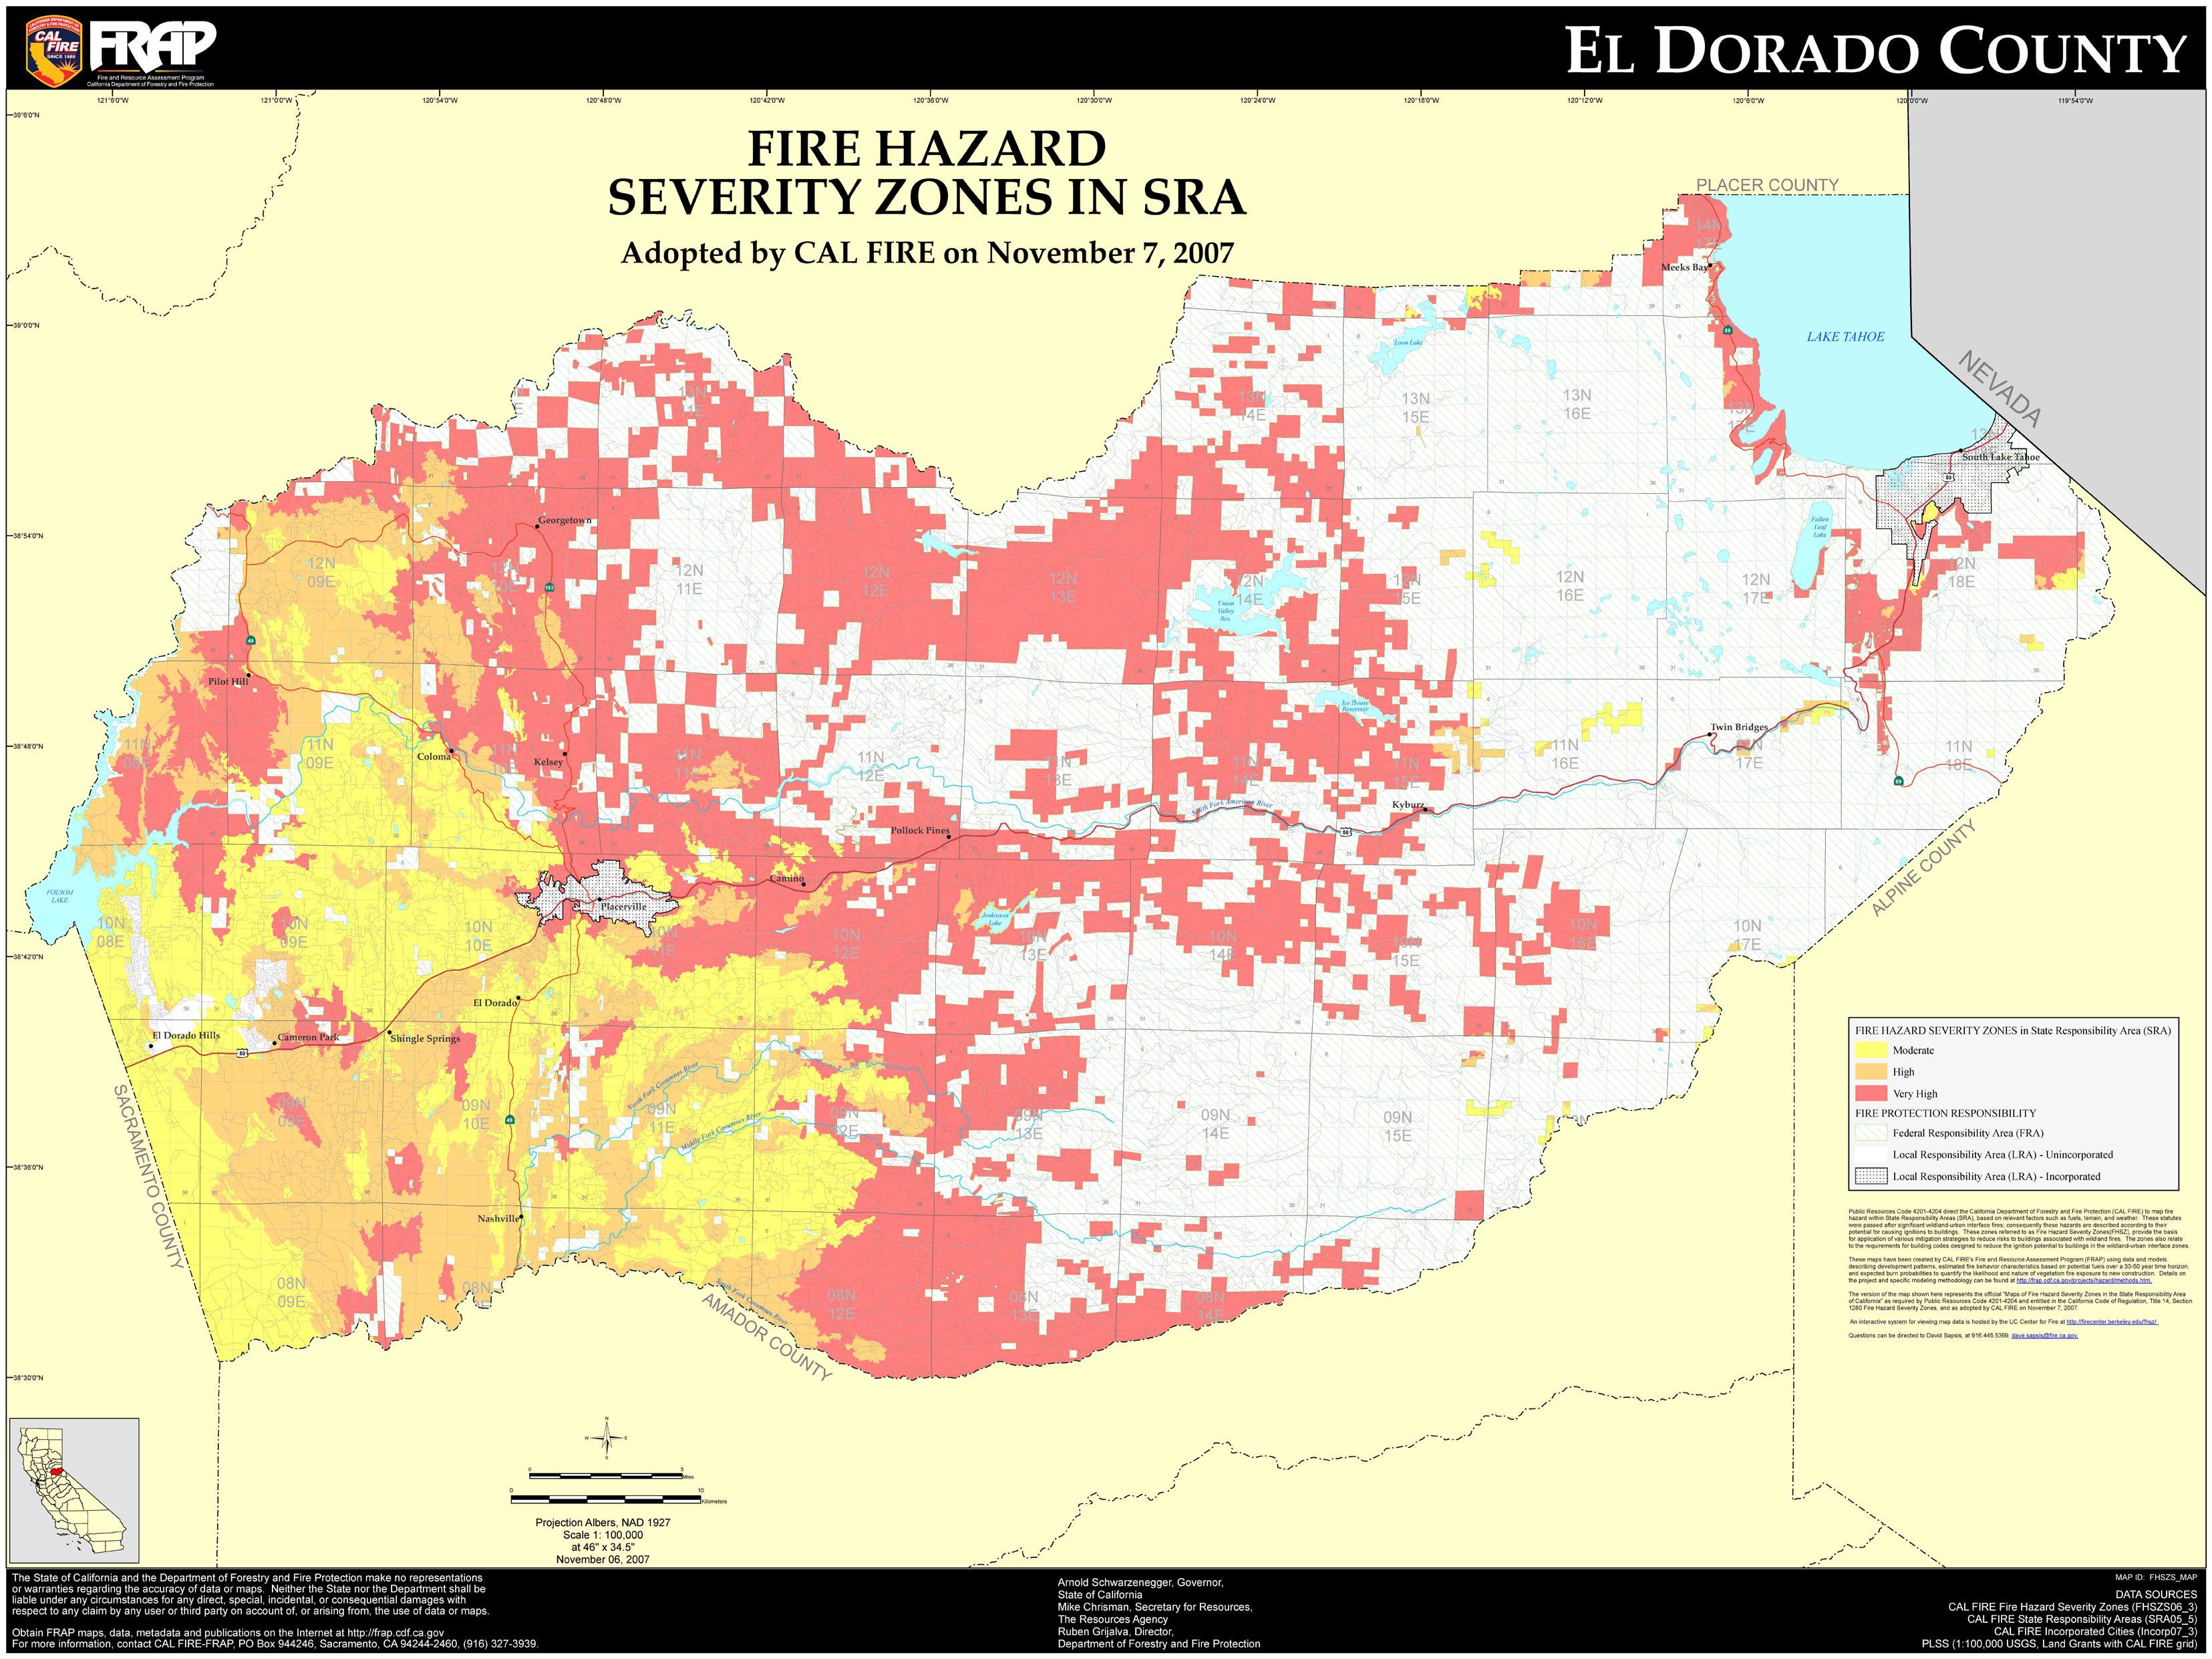 El Dorado County Fire Hazard Severity Zones